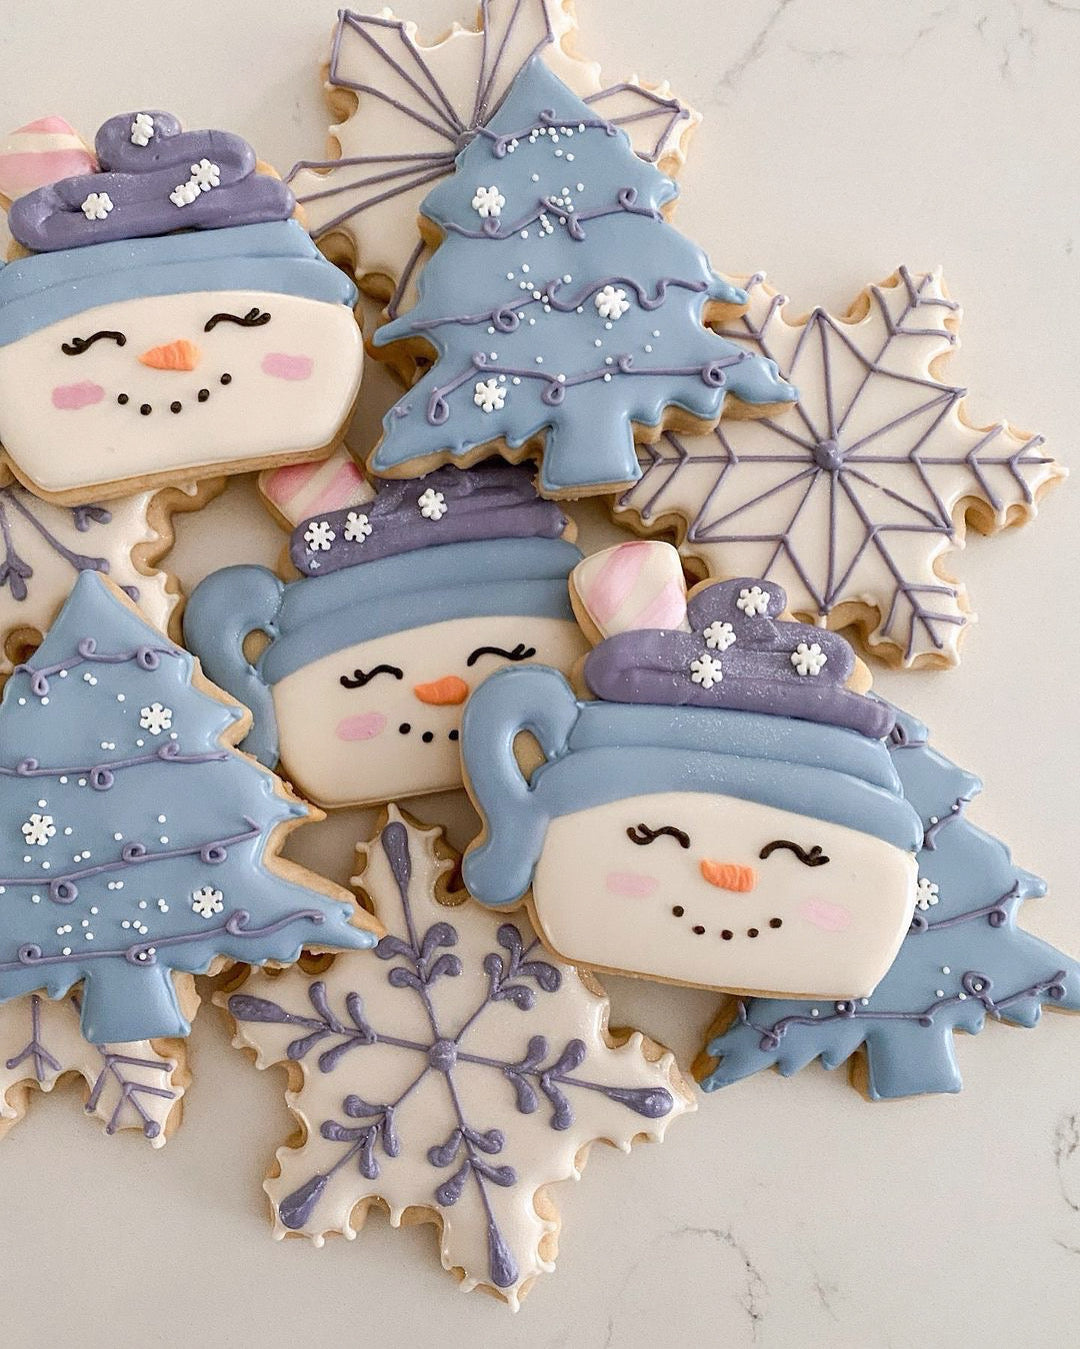 Winter Wonderland Cookie Workshop - Kelowna